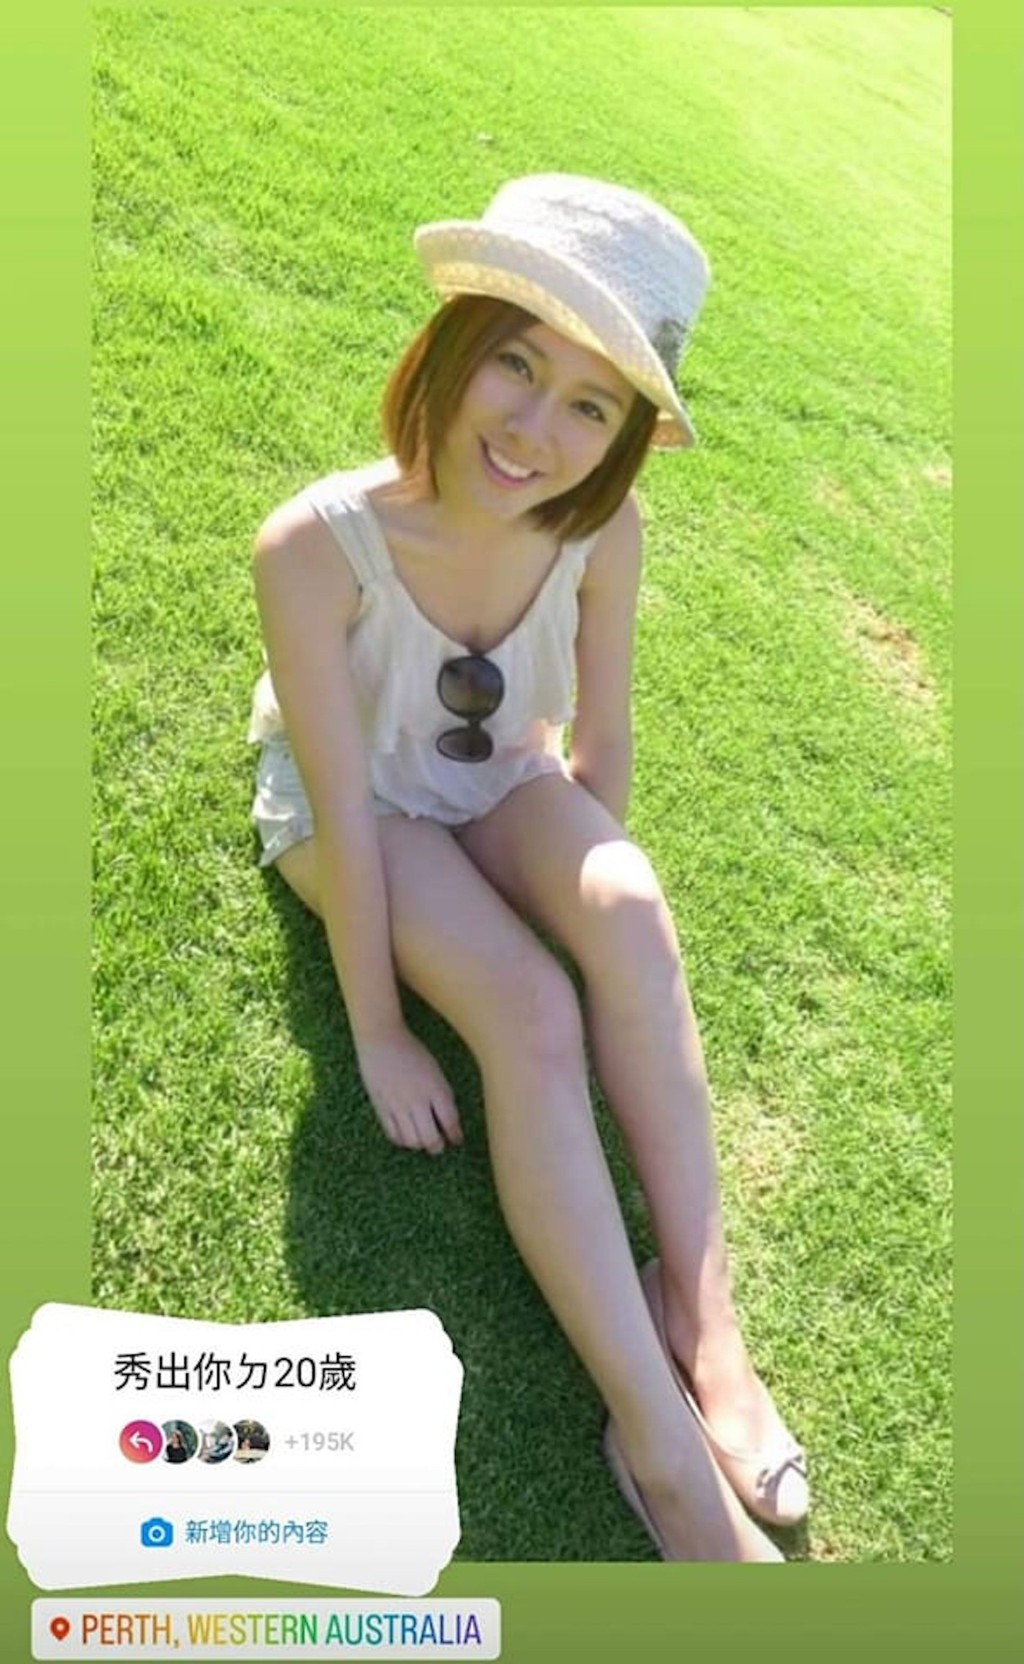 梁凱寧早前晒出20歲於草地上晒長腿的照片。